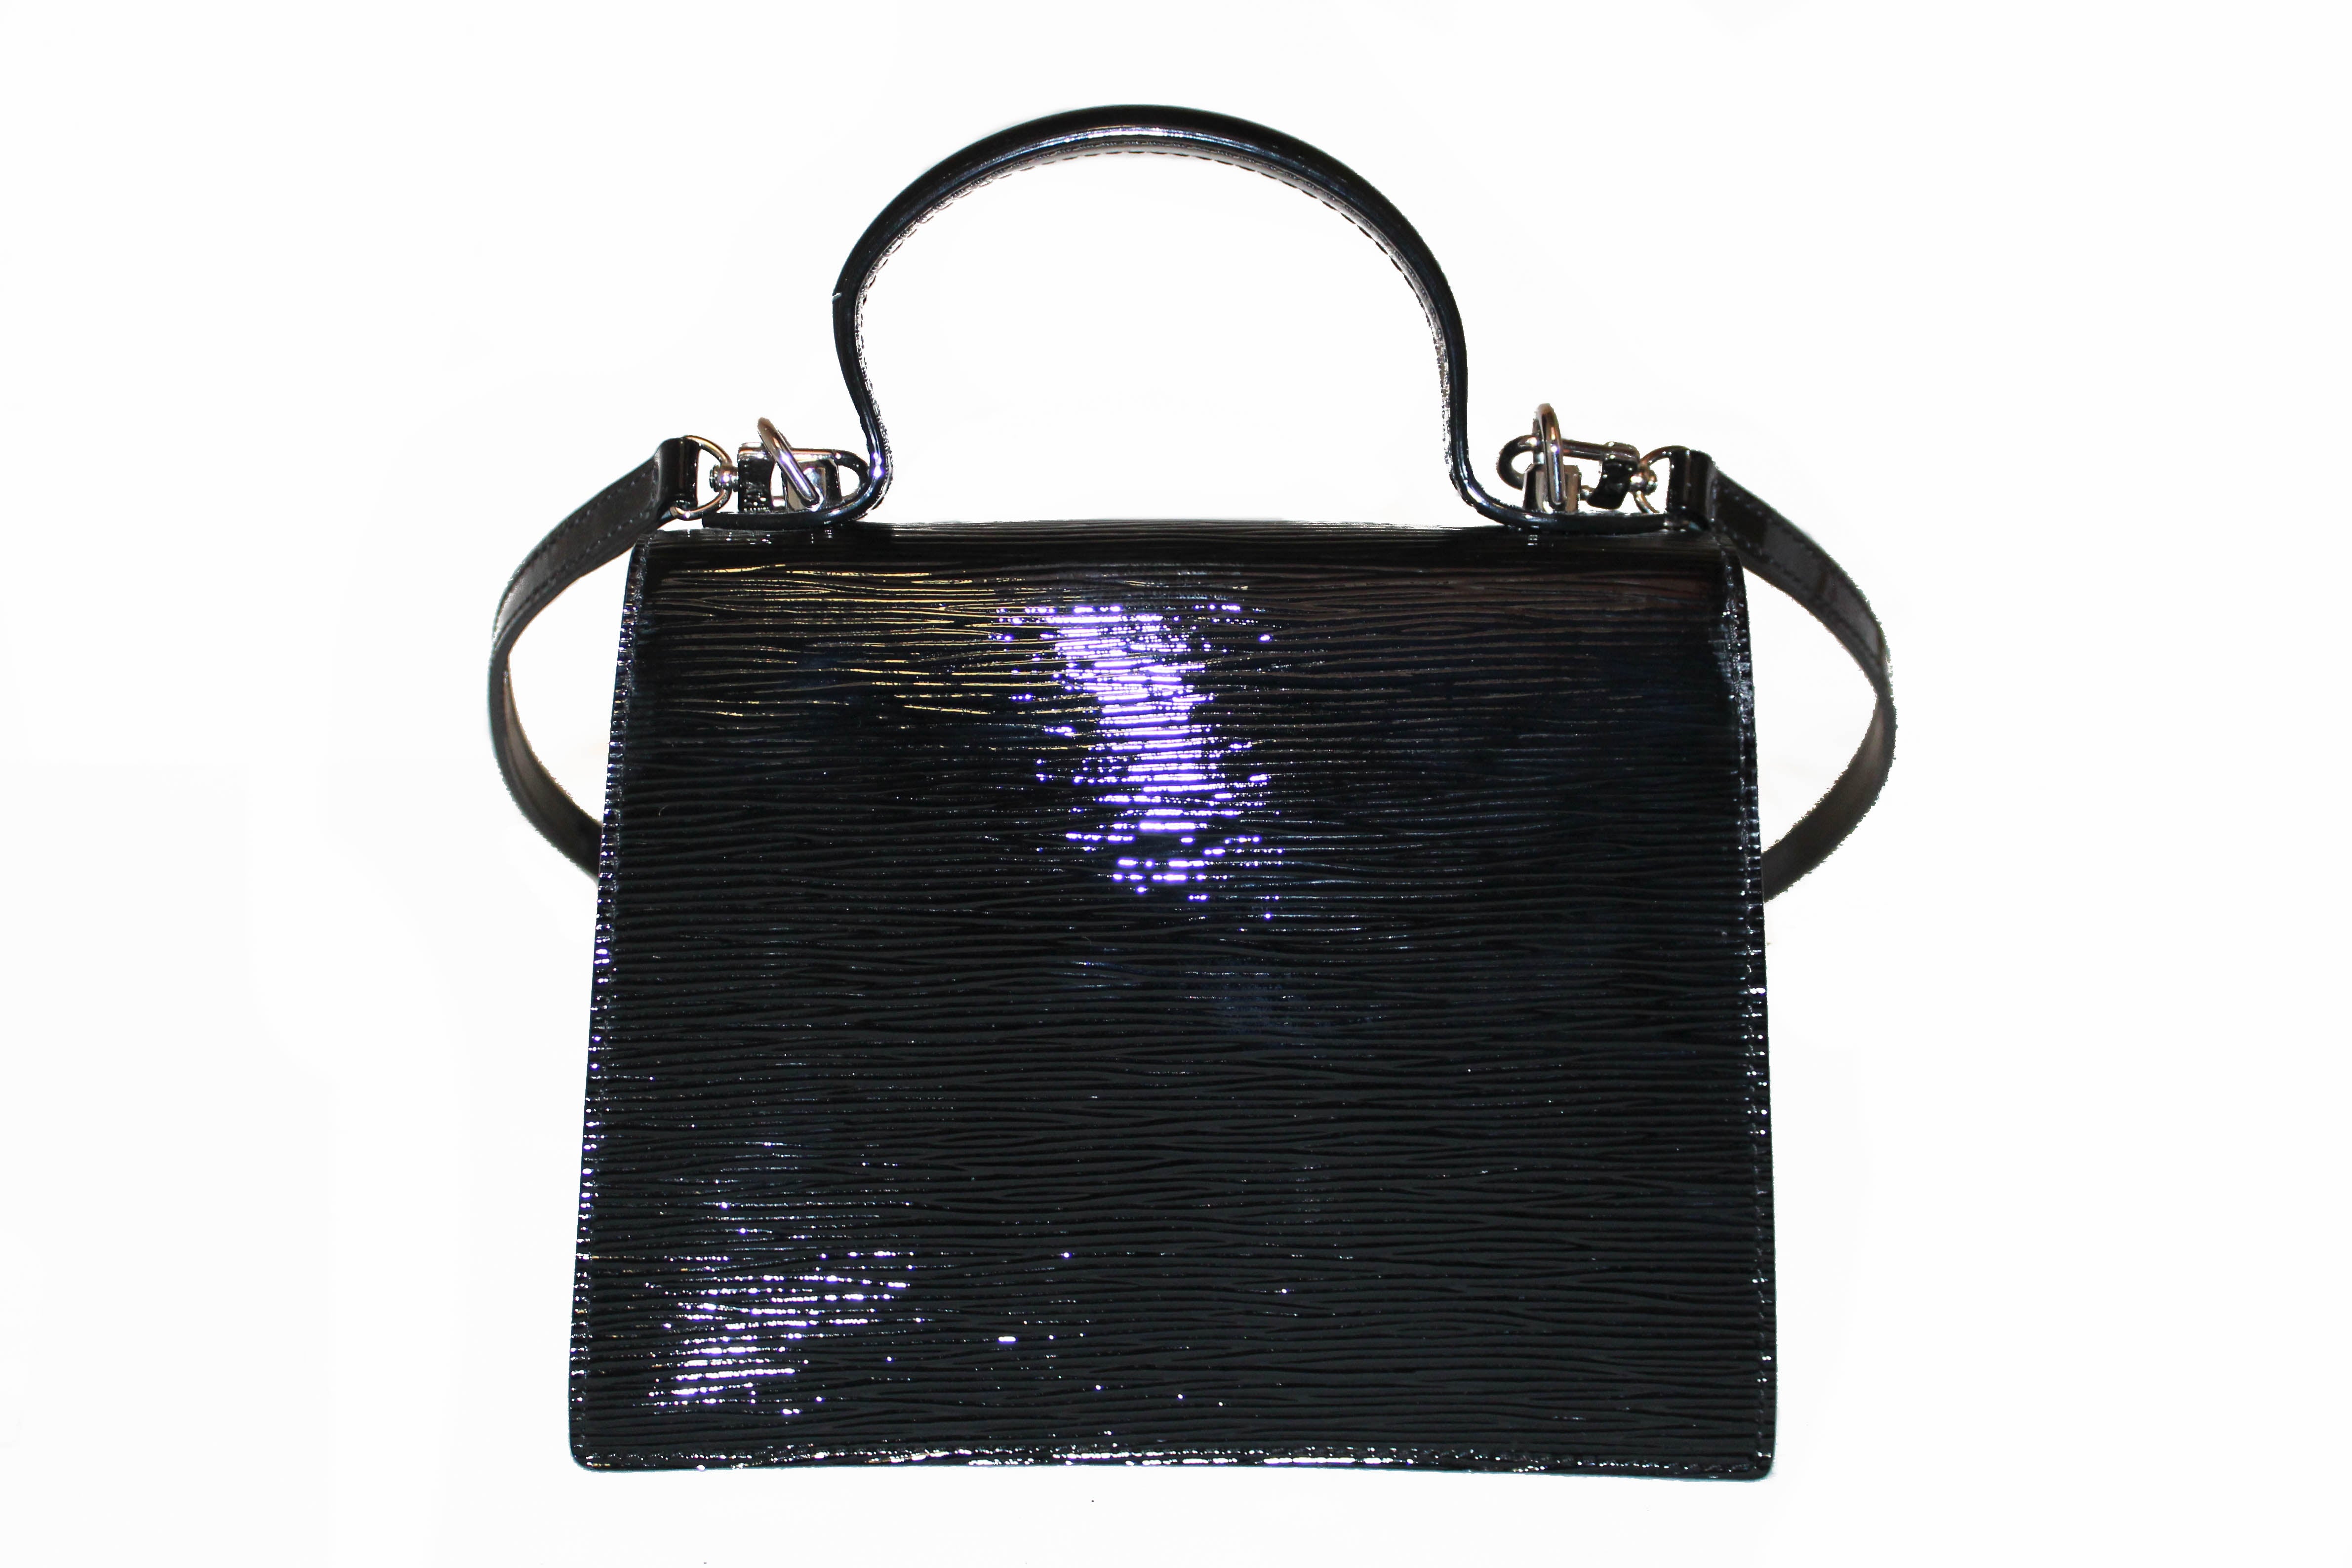 Louis Vuitton Black Epi Leather Sevigne Clutch